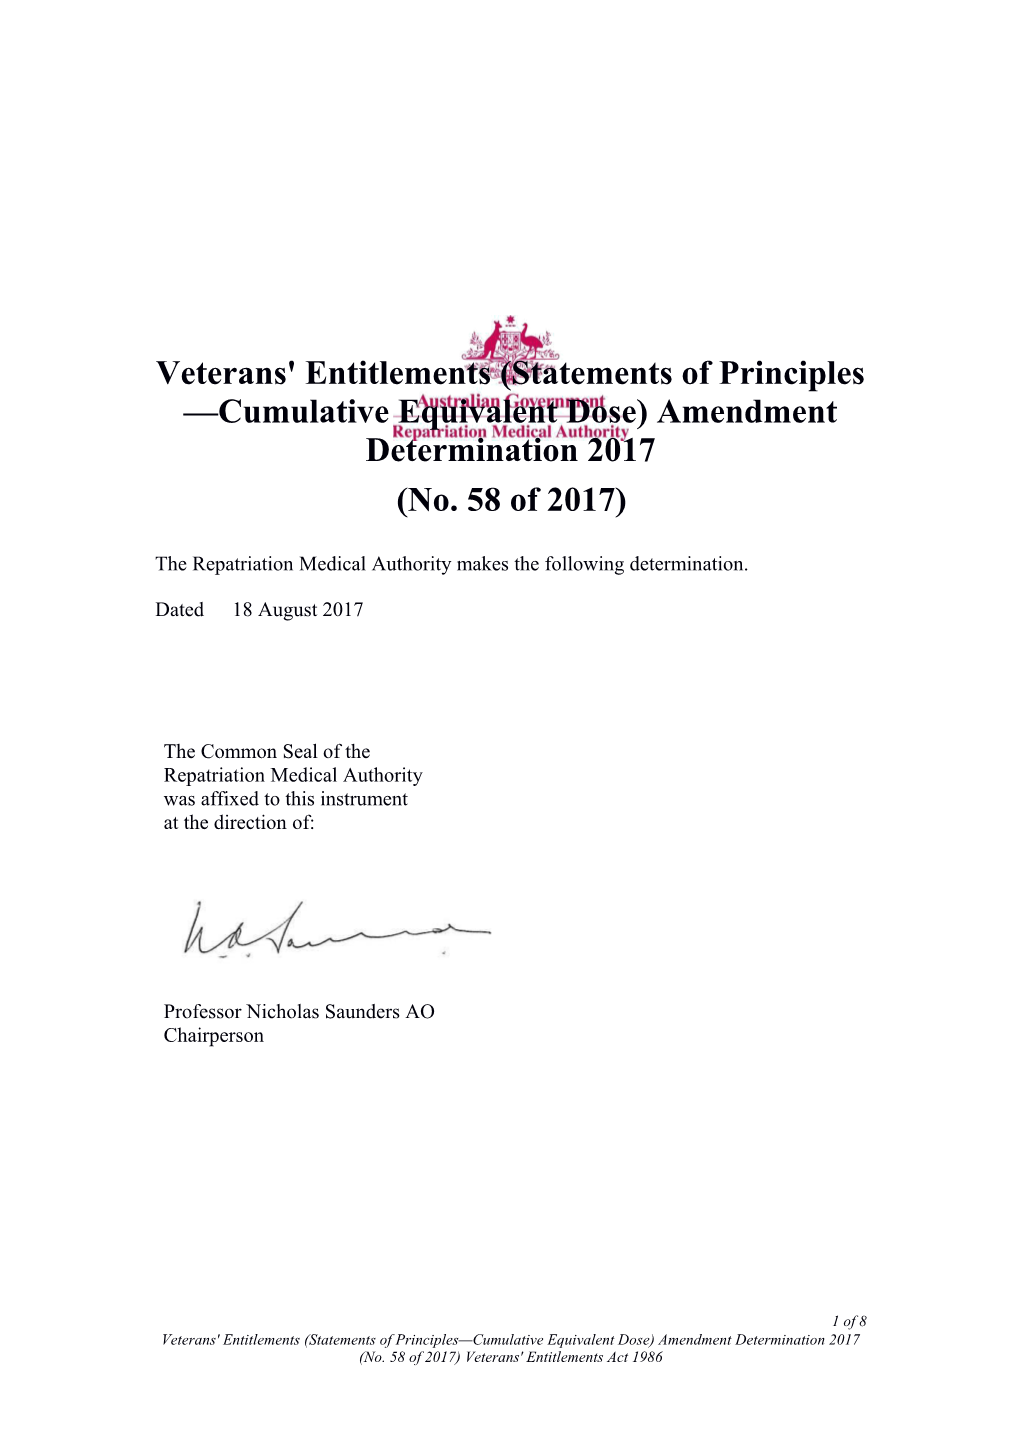 Veterans' Entitlements (Statements of Principles Cumulative Equivalent Dose) Amendment